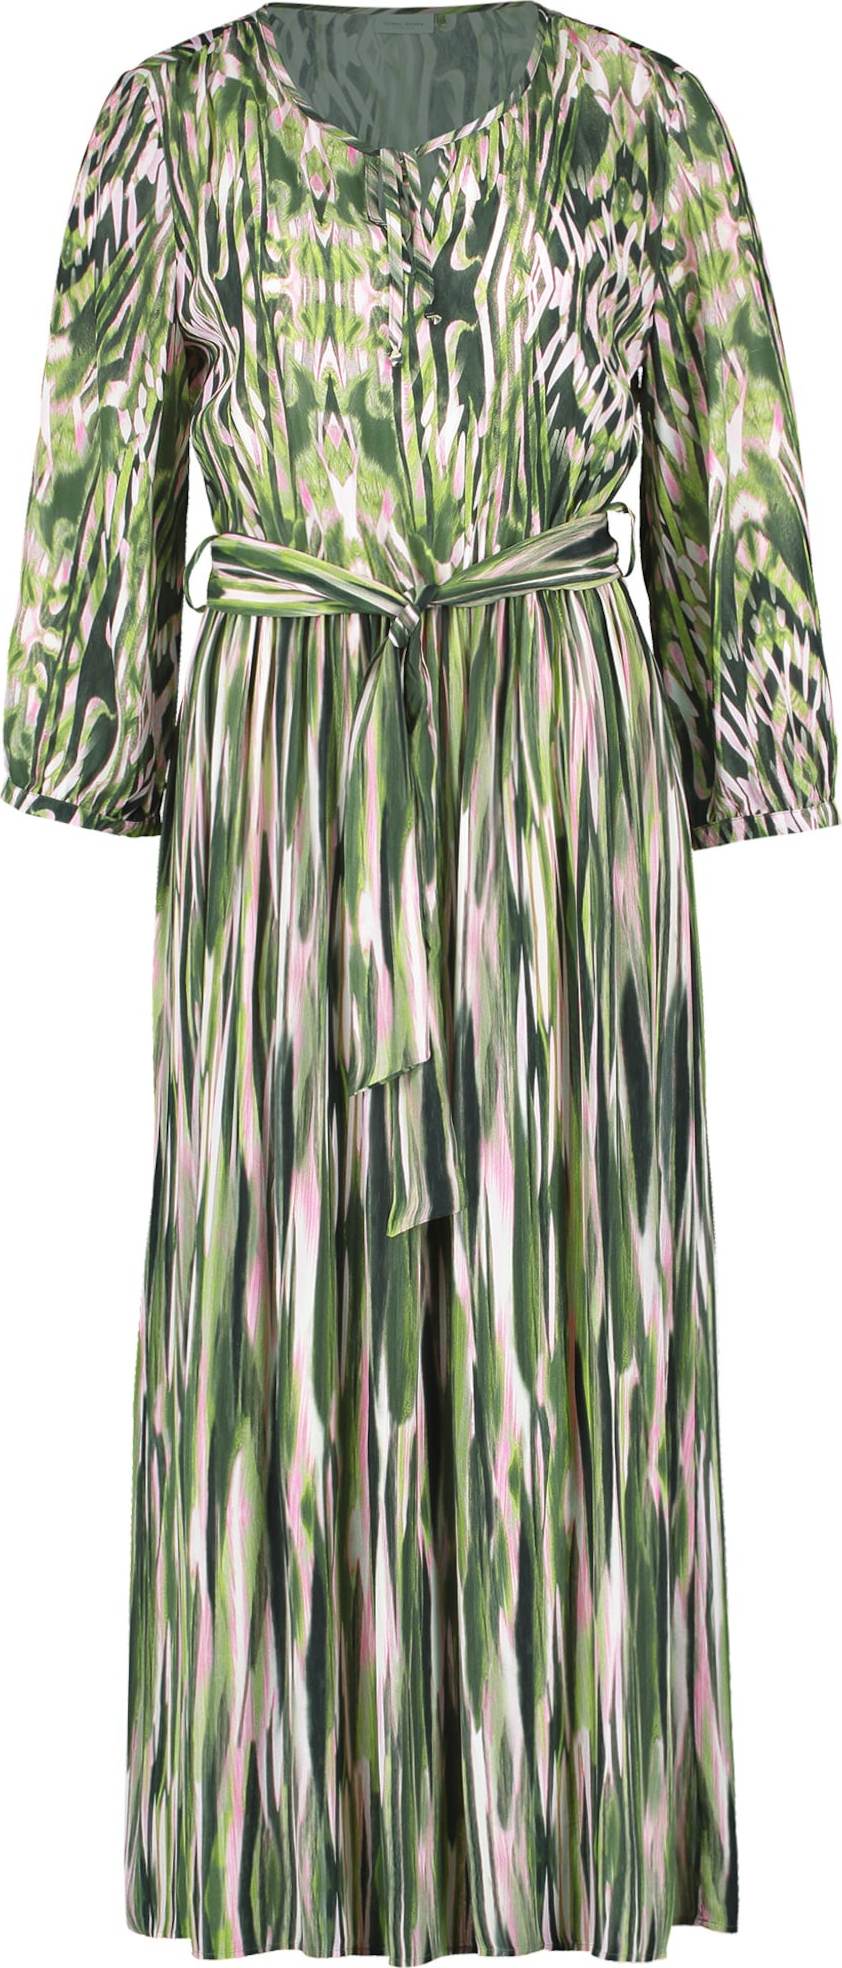 GERRY WEBER Košilové šaty režná / zelená / tmavě zelená / bílá